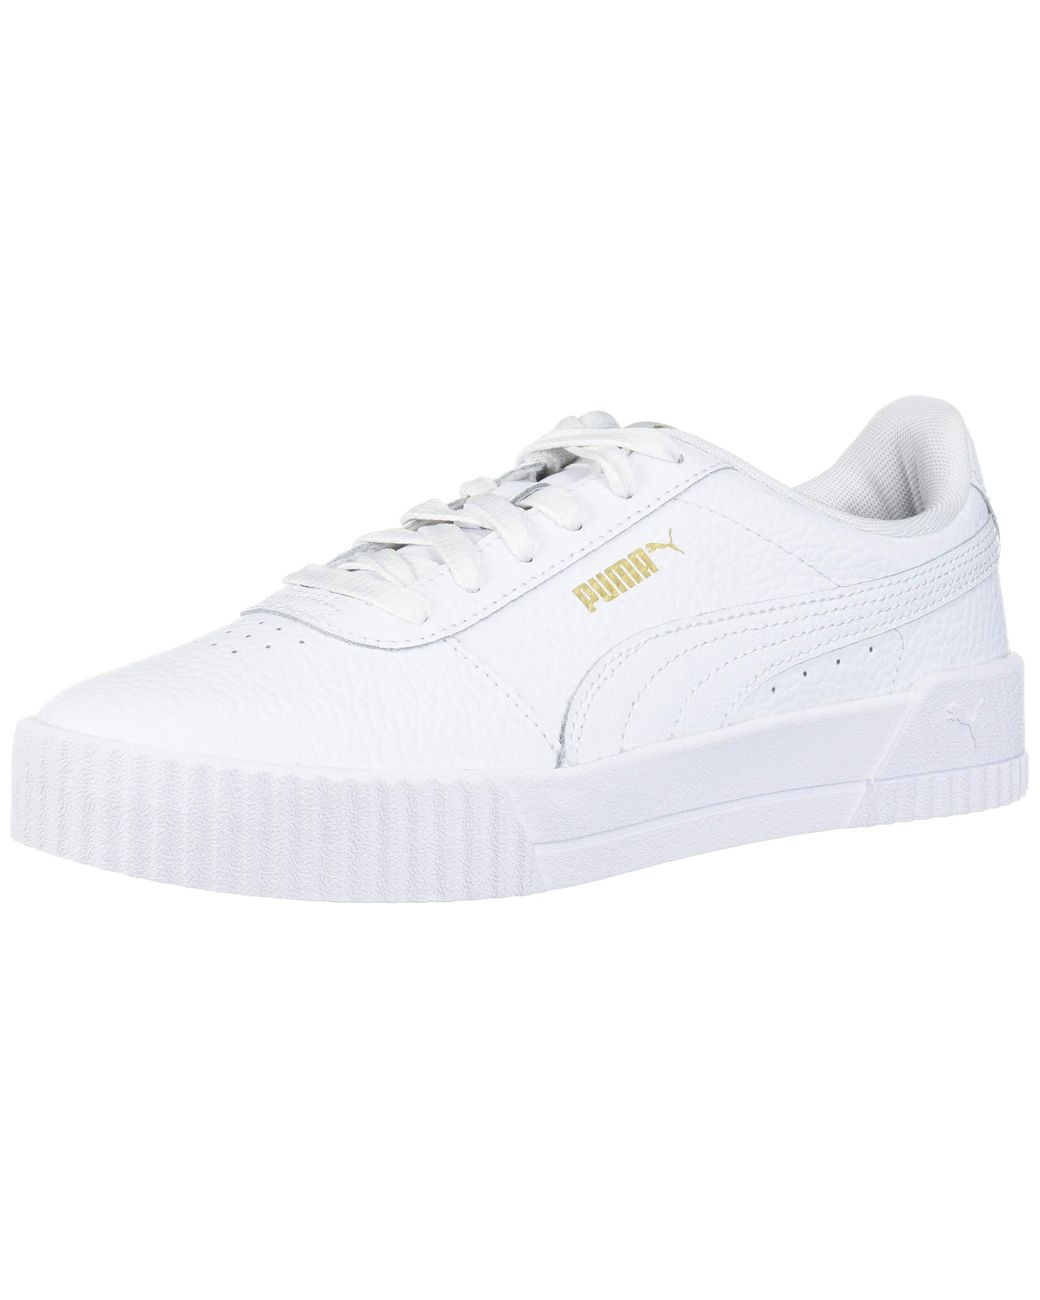 puma carina white sneakers